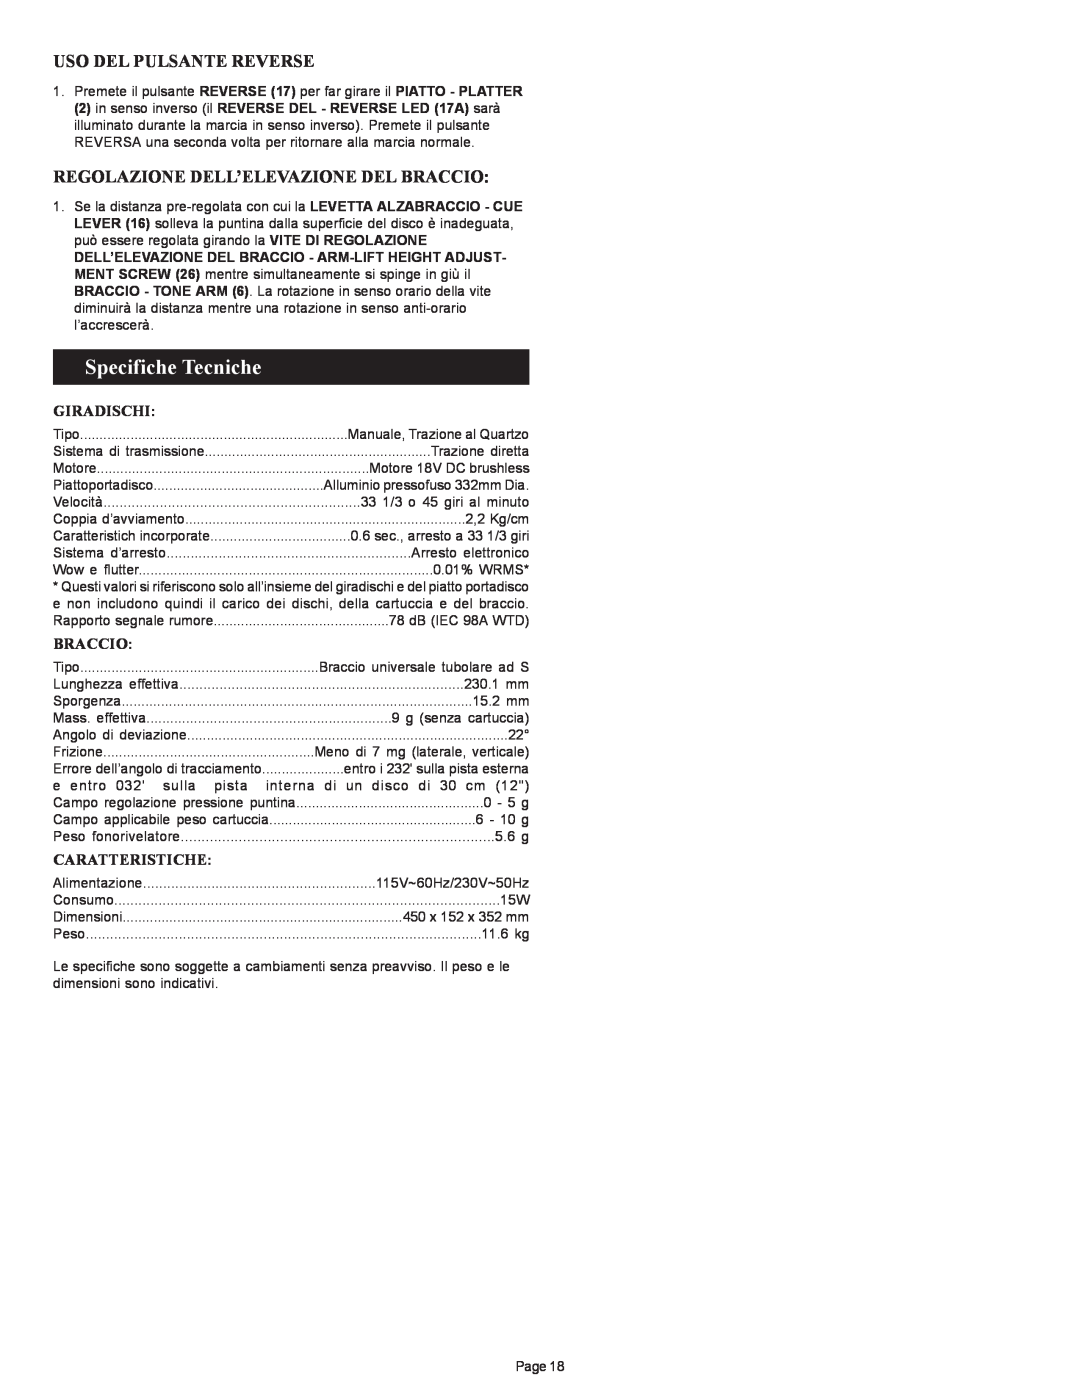 Gemini PT 2100 manual Specifiche Tecniche, Uso Del Pulsante Reverse, Regolazione Dell’Elevazione Del Braccio, Giradischi 